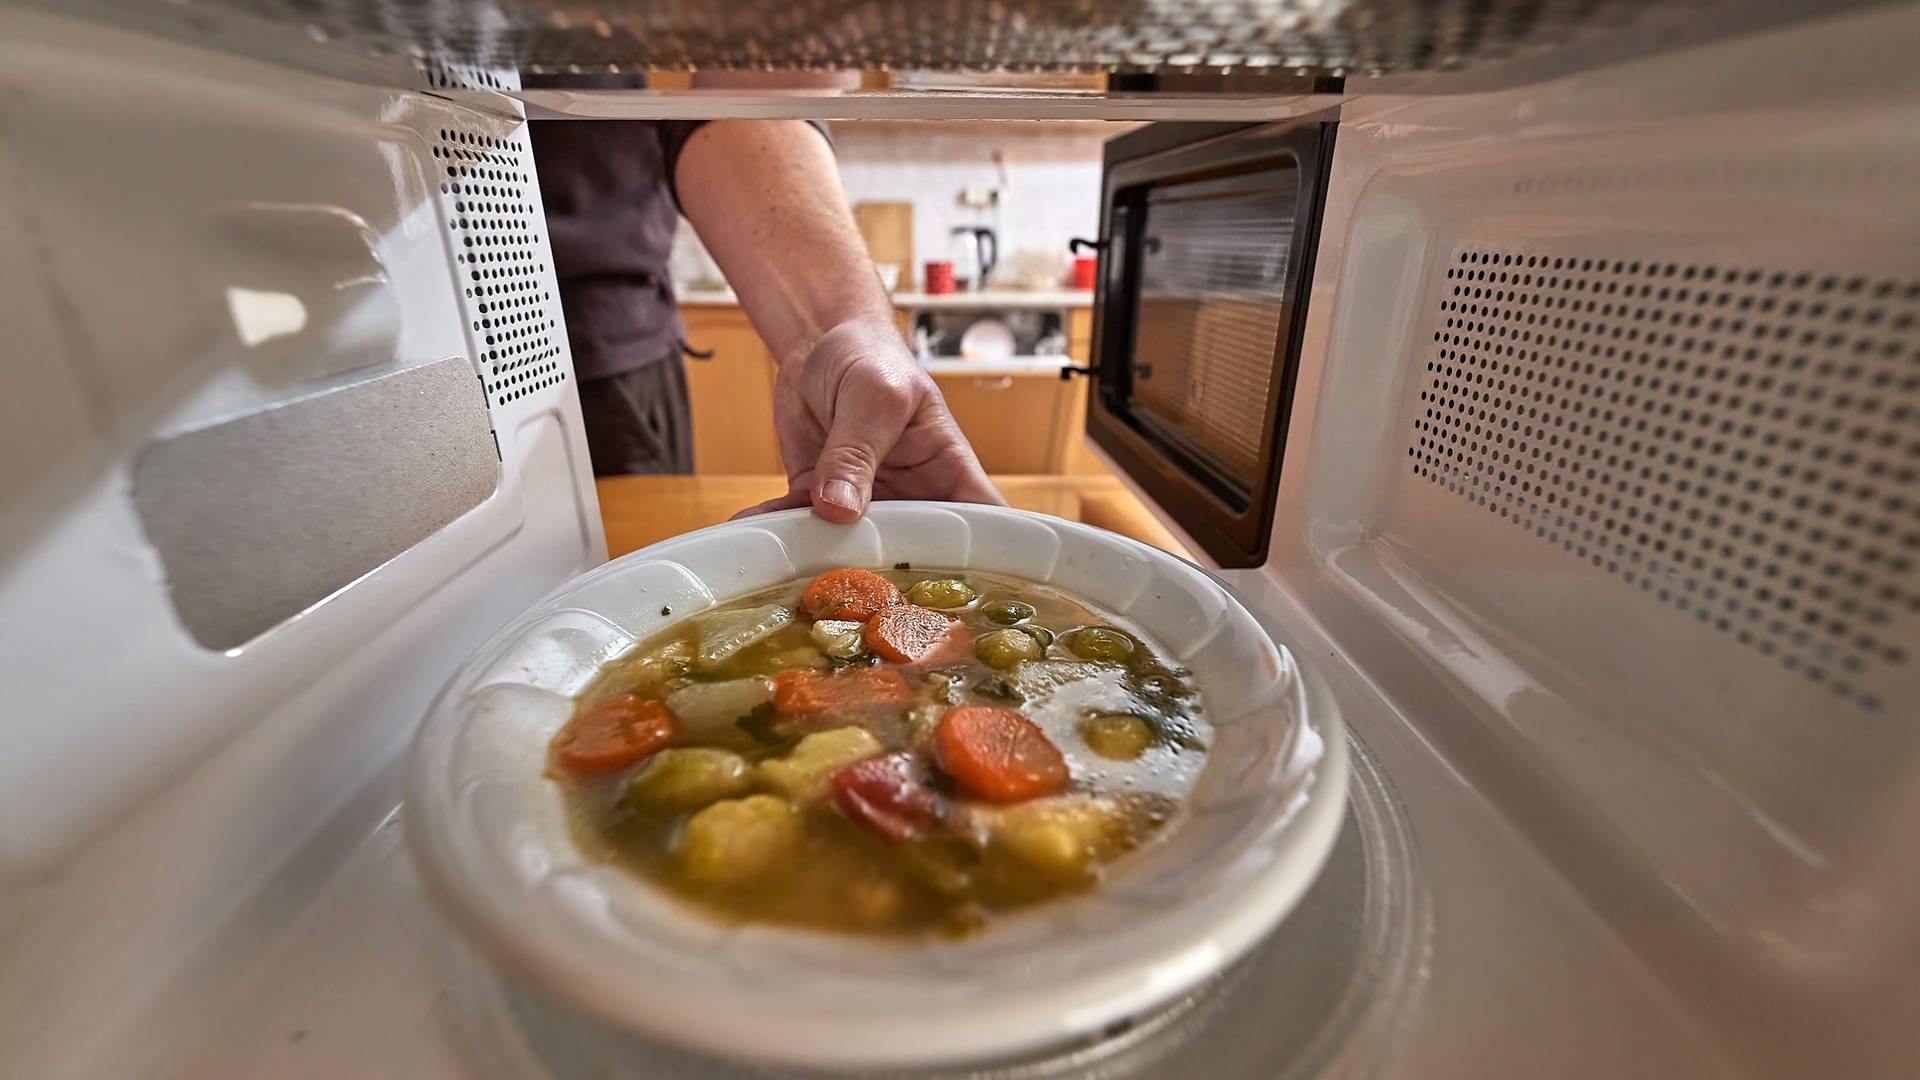 Essen kalt, Teller heiß – was passiert da in der Mikrowelle?